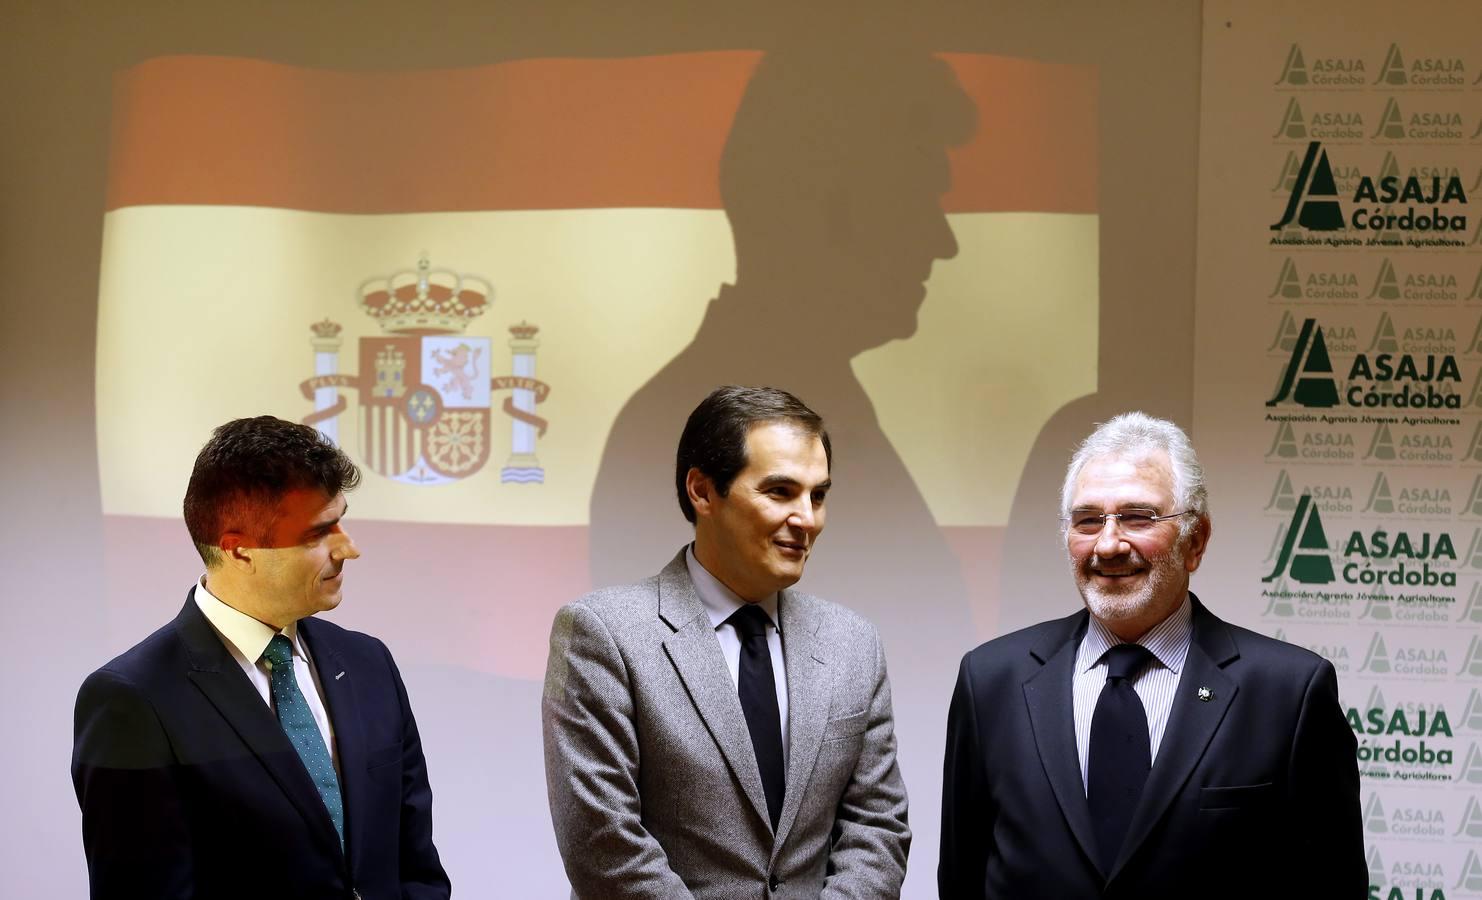 El homenaje de Asaja Córdoba a la Guardia Civil, en imágenes